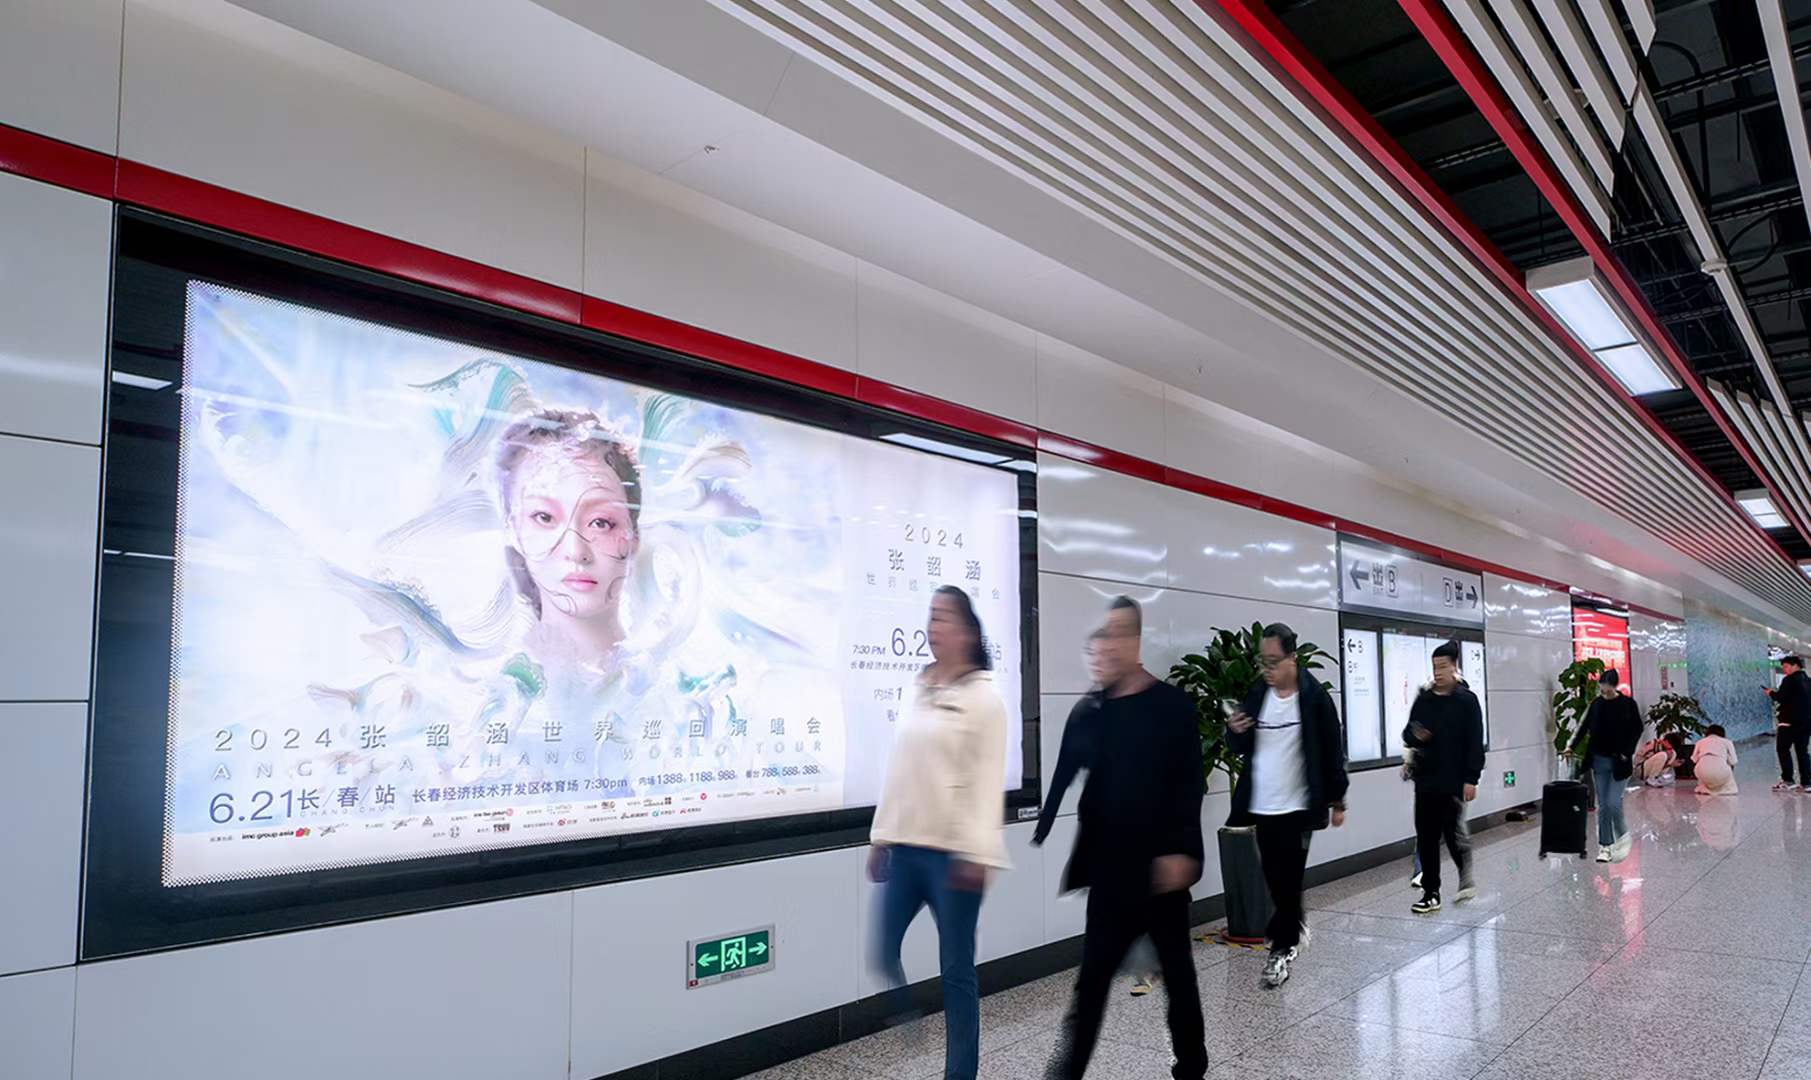 深圳地铁广告投放有什么特色